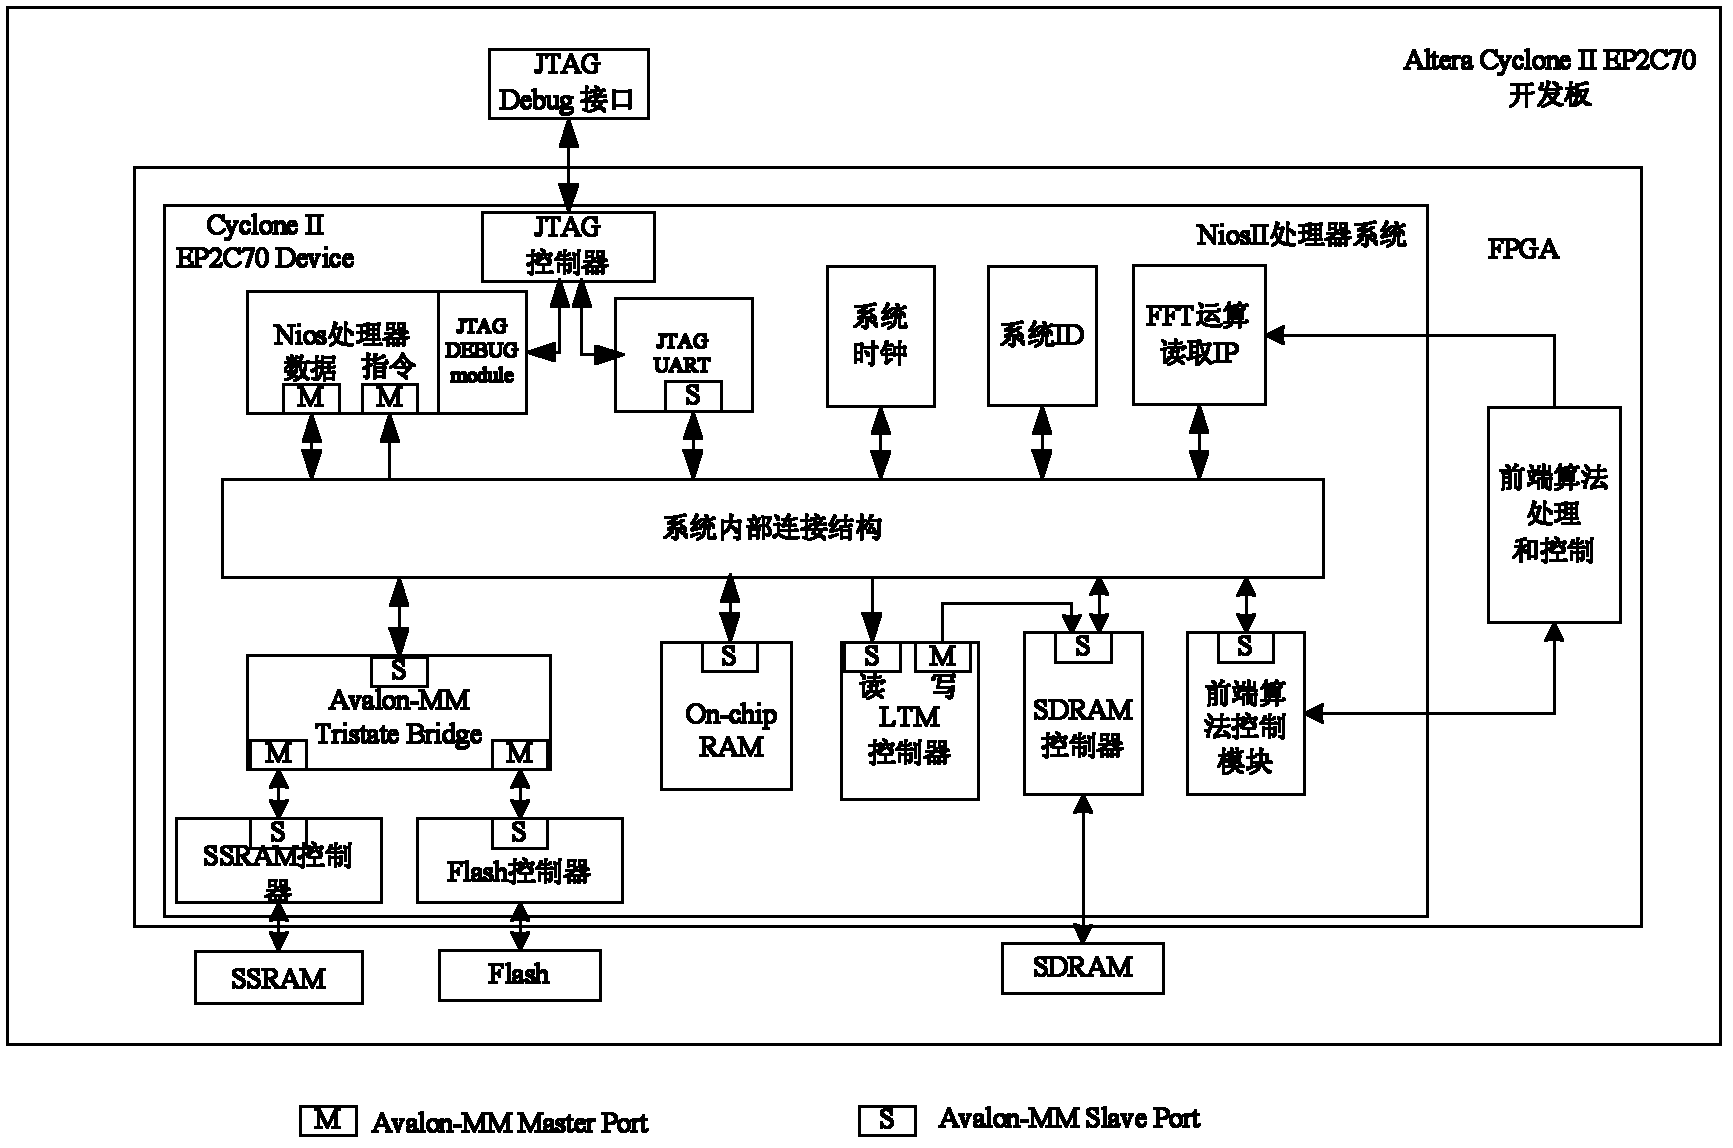 A power harmonic analyzer based on fpga